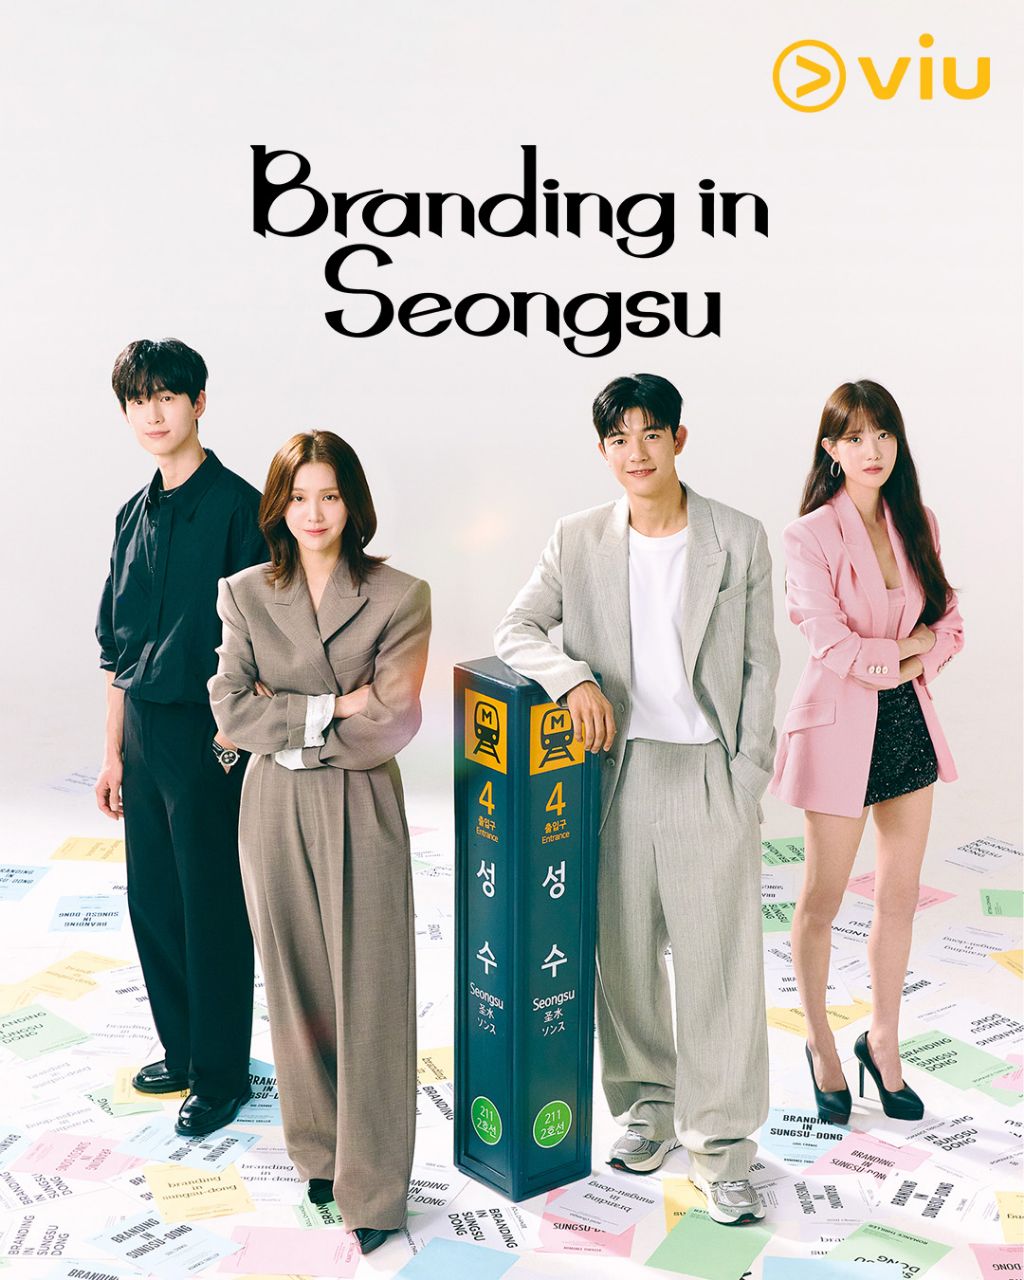 مسلسل العلامة التجارية في سيونغسو Branding in Seongsu الحلقة 6